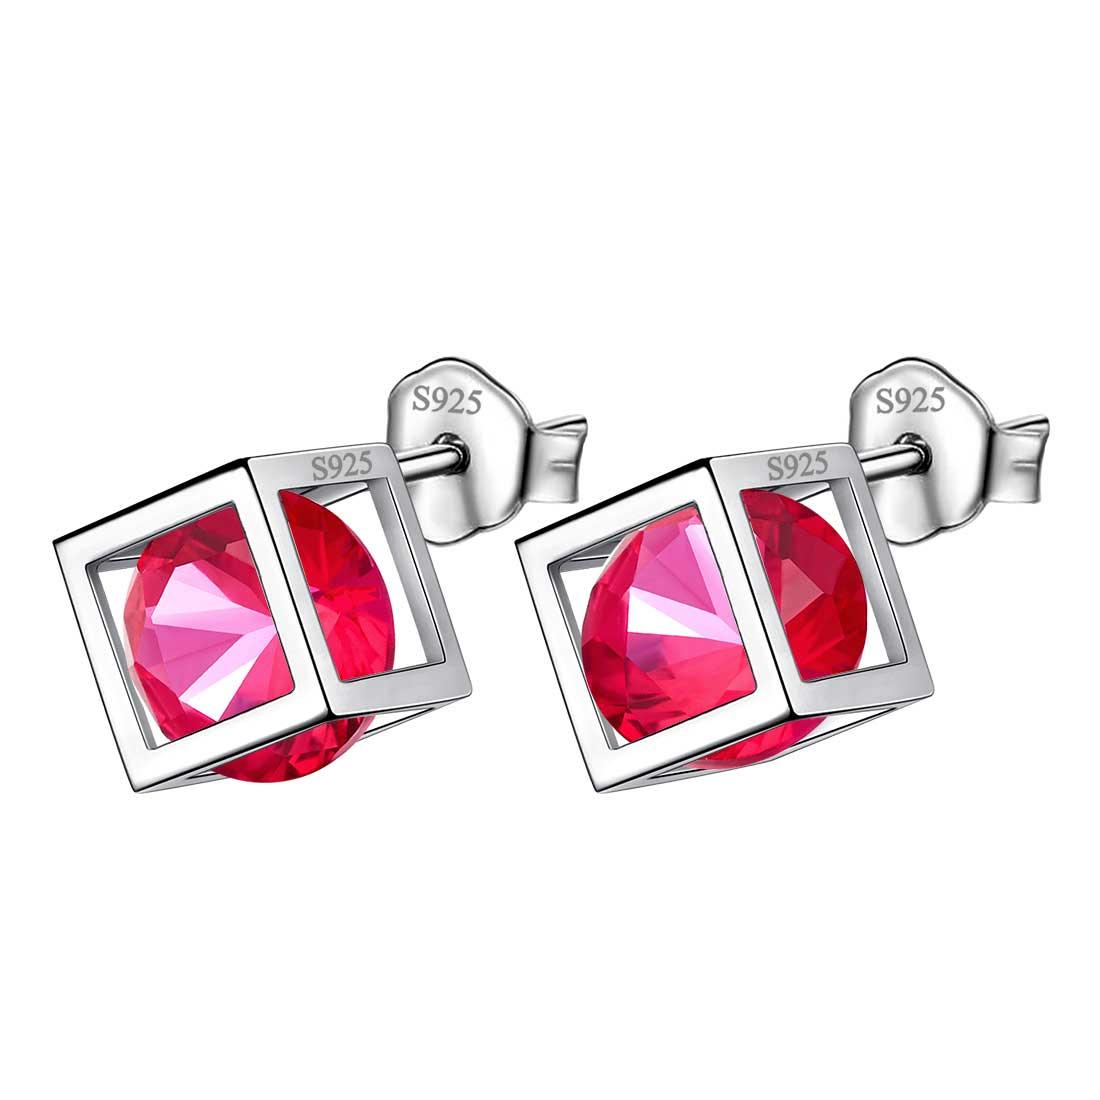 3D Cube Birthstone July Ruby Earrings Sterling Silver - Earrings - Aurora Tears